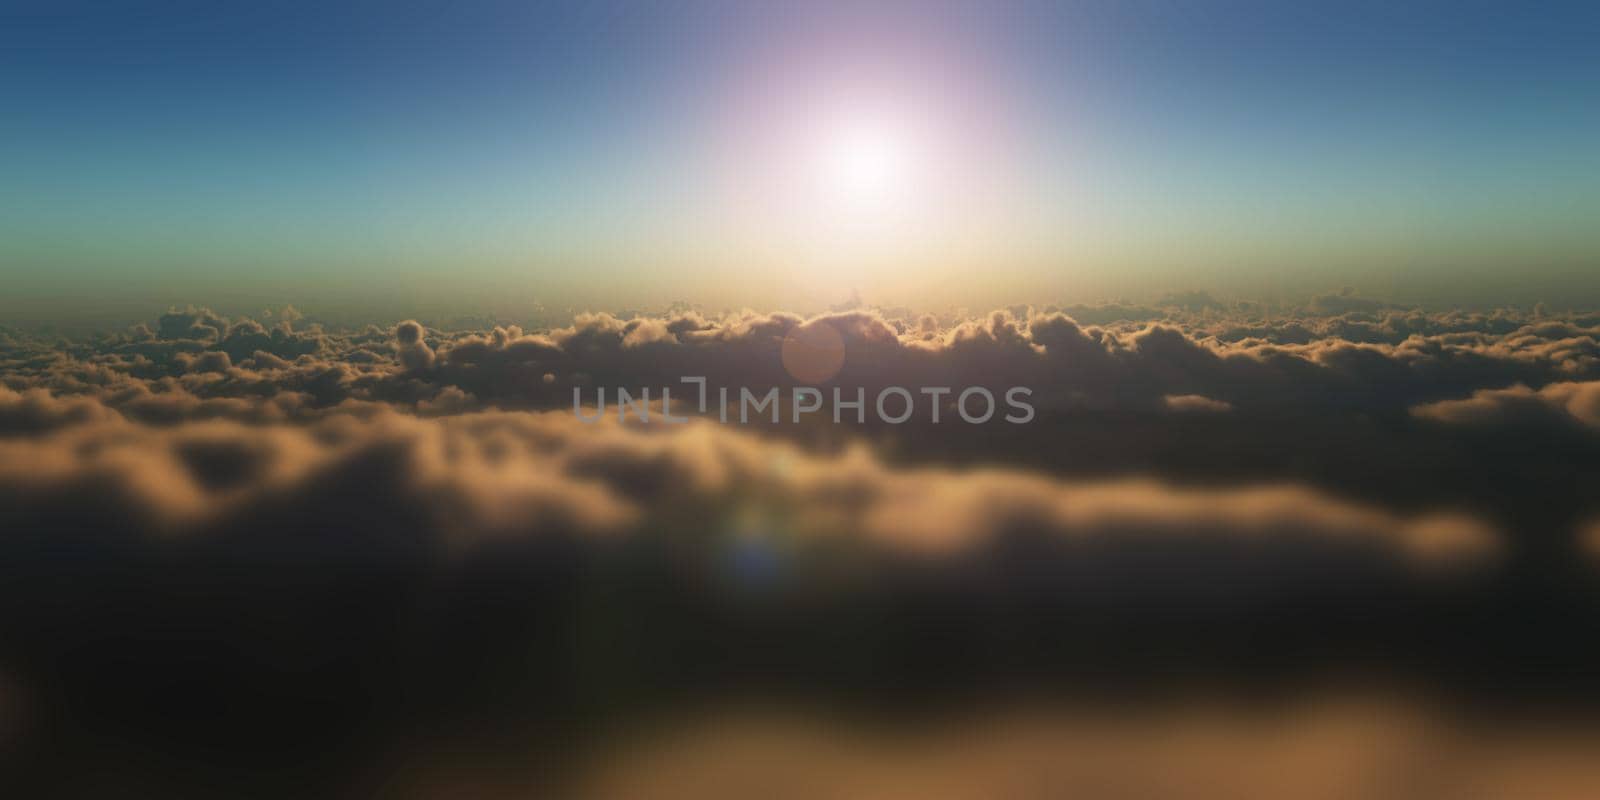 fly over clouds sunset, 3d render illustration